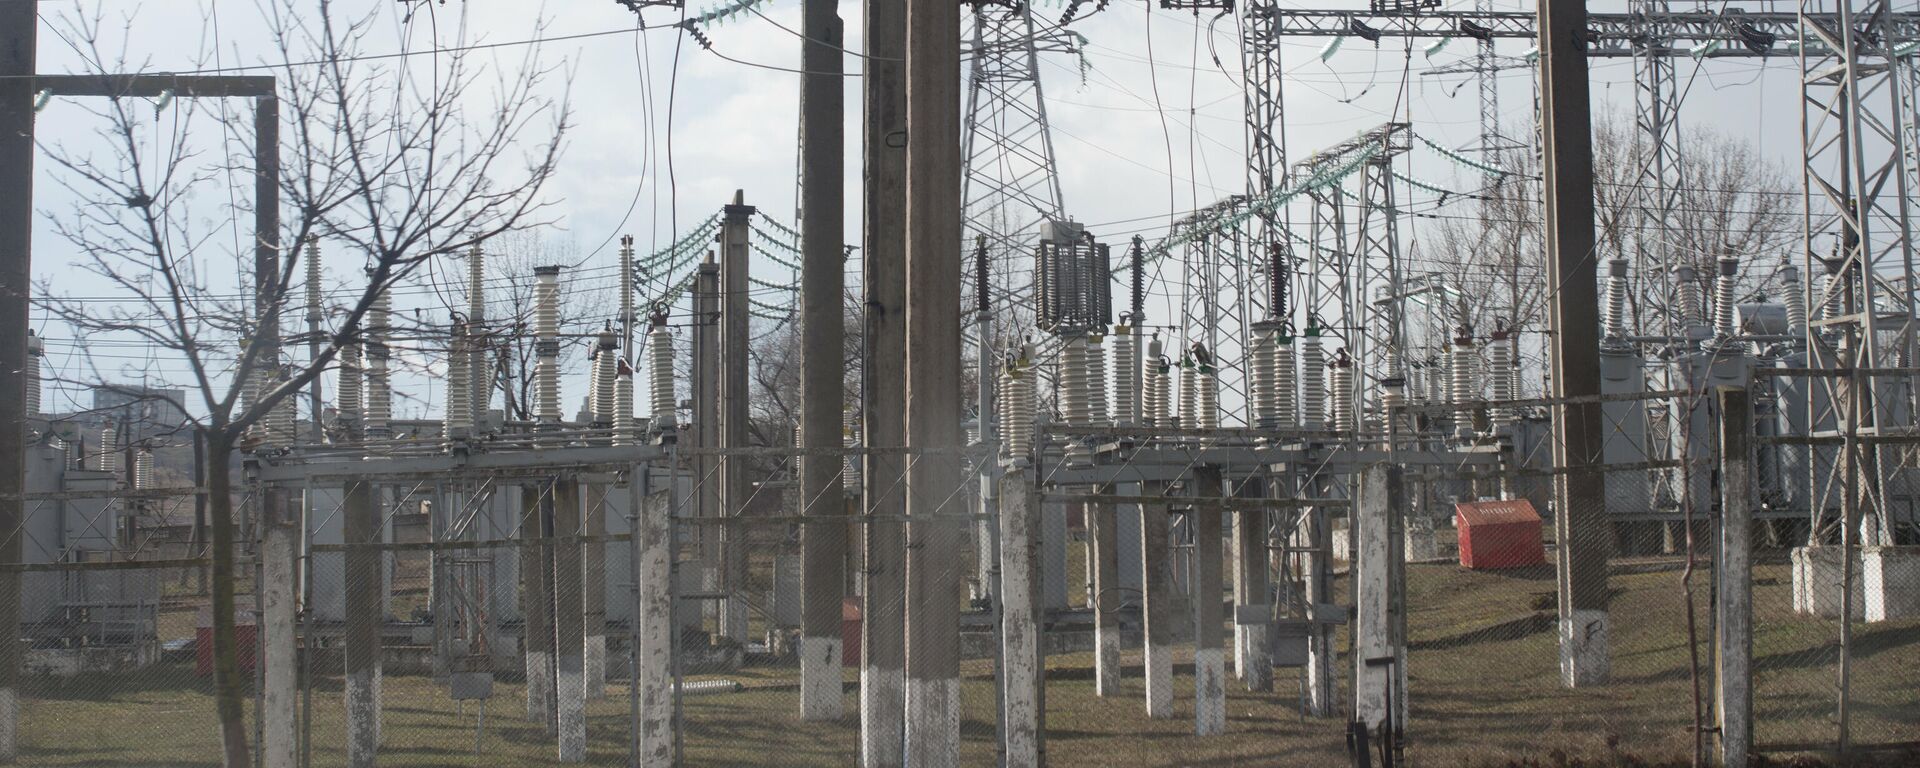 Țineți și lovitura asta? Prețul energiei electrice va crește până în aprilie cu 70 la sută - Sputnik Moldova, 1920, 12.02.2022